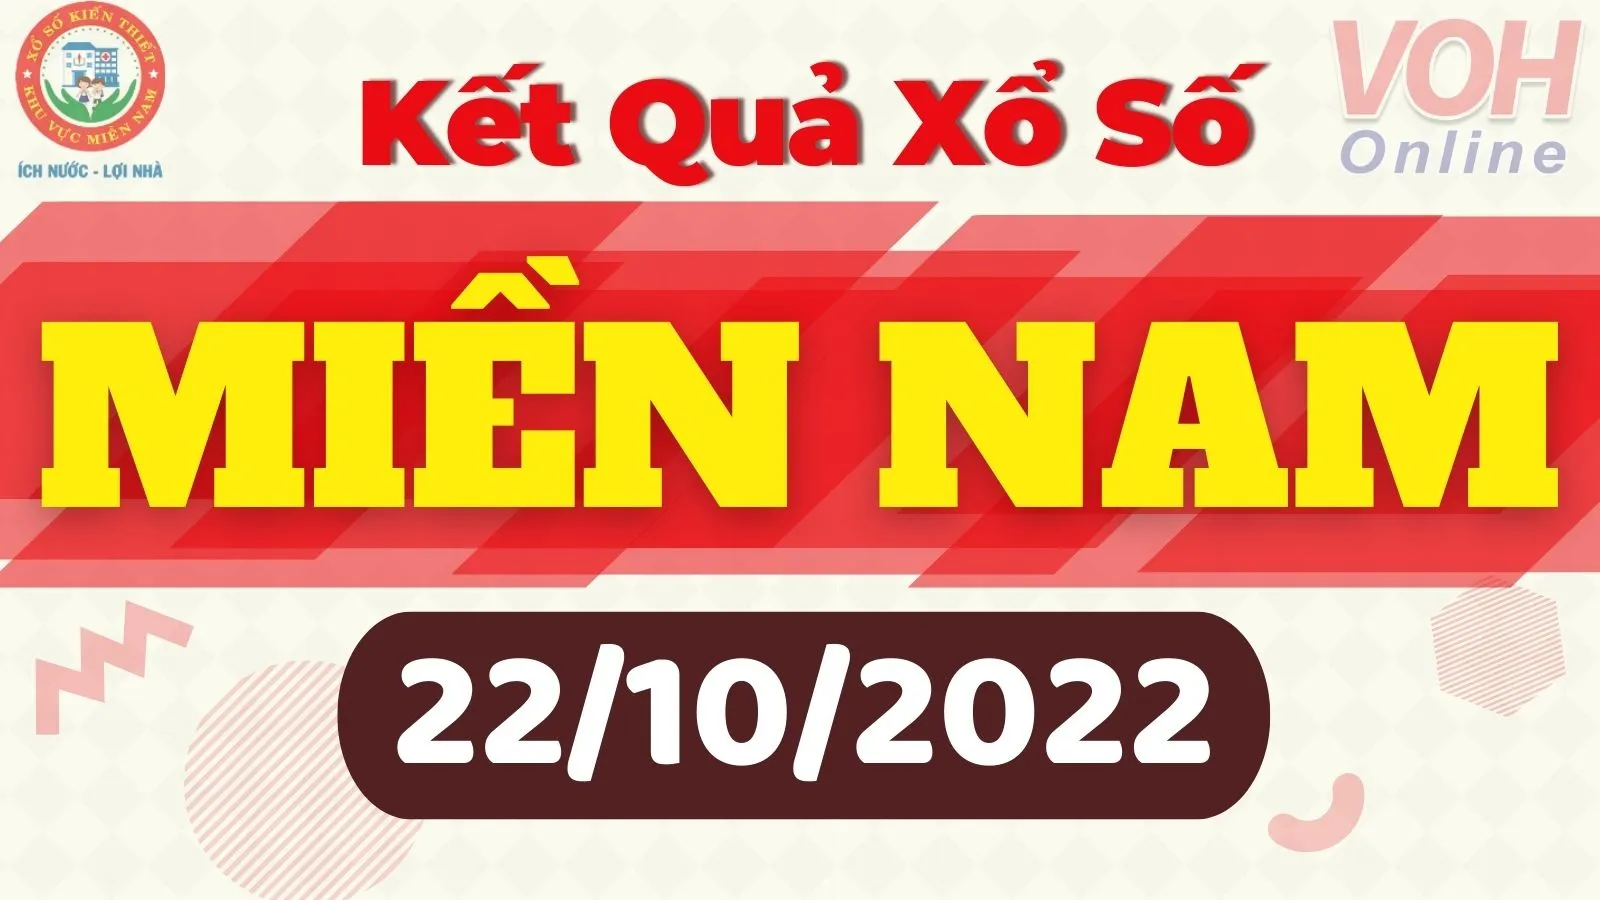 Xổ số miền Nam hôm nay - XSMN 22/10 - SXMN 22/10/2022 - Kết quả xổ số hôm nay ngày 22 tháng 10